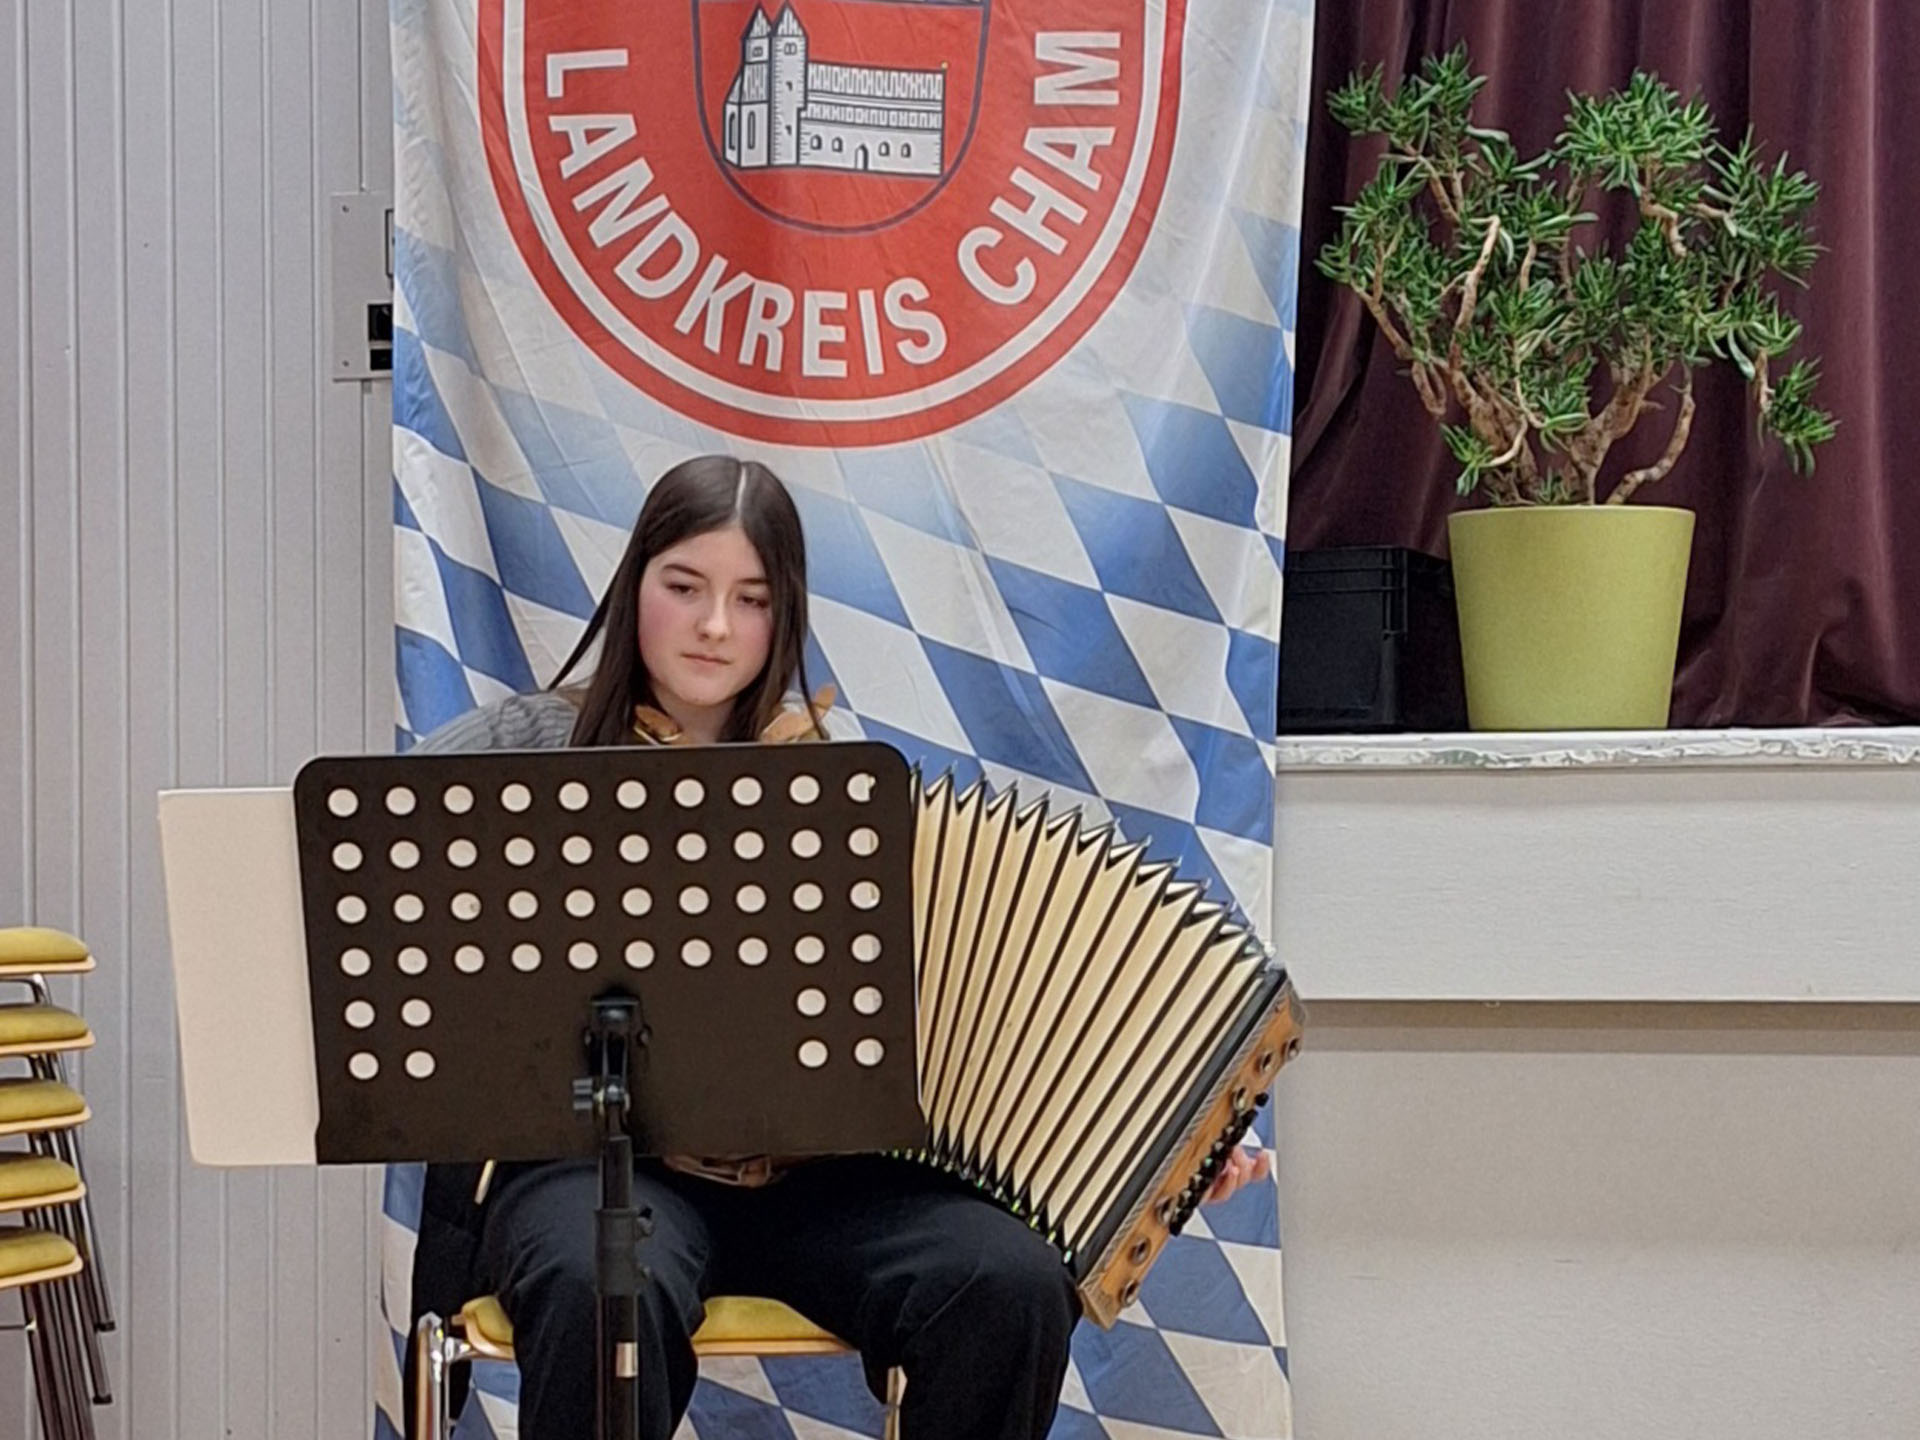 Musikalische Begleitung des Festakts: Eine junge Frau spielt auf einem Akkordeon